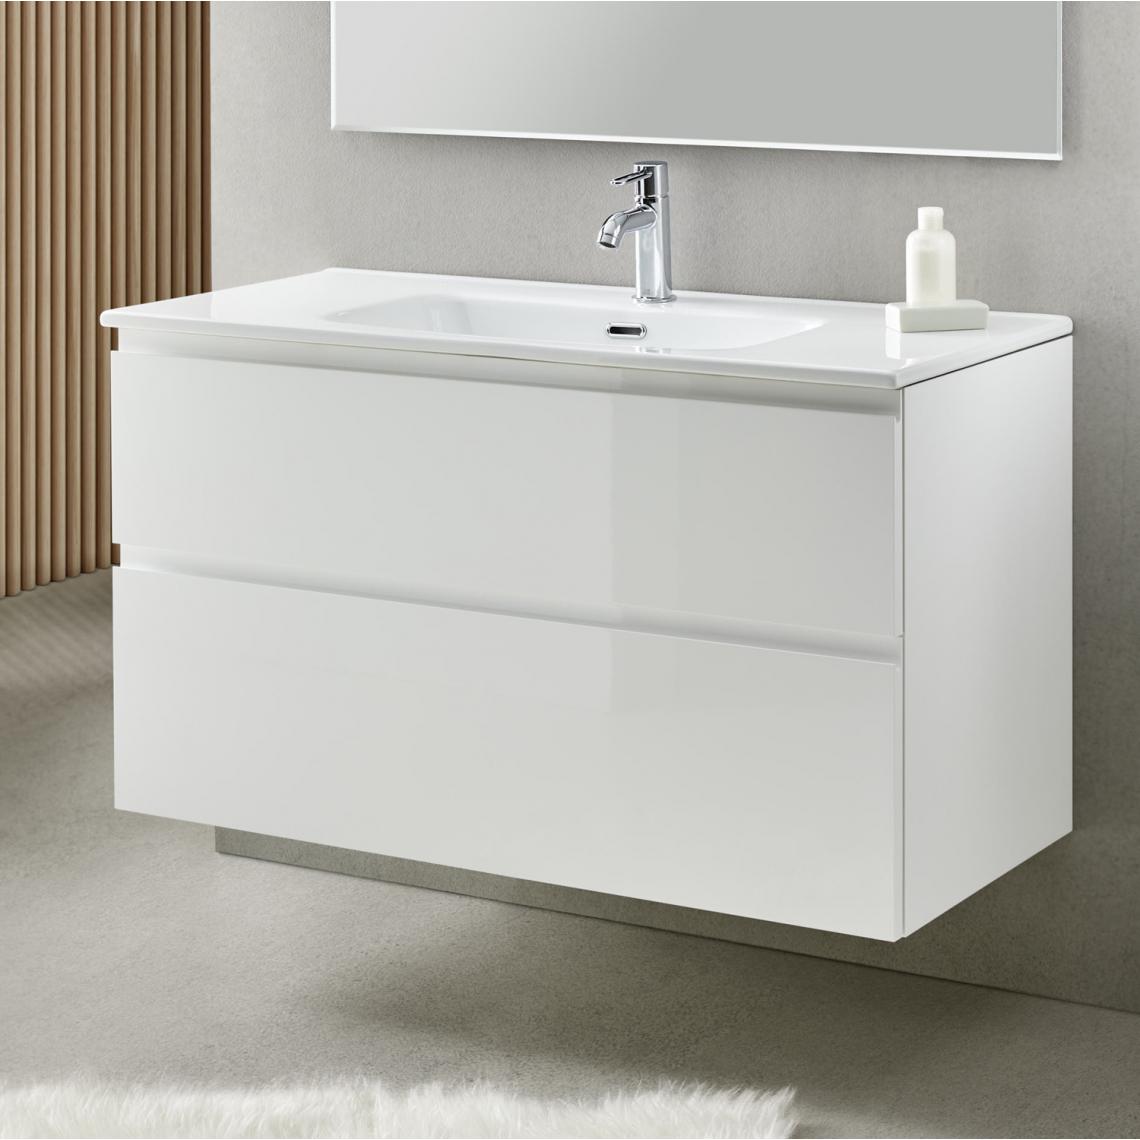 Pegane - Meuble de salle de bain avec 2 tiroirs suspendus blanc avec plan moulé - Longueur 100 x Hauteur 56 x Profondeur 46 cm - meuble bas salle de bain